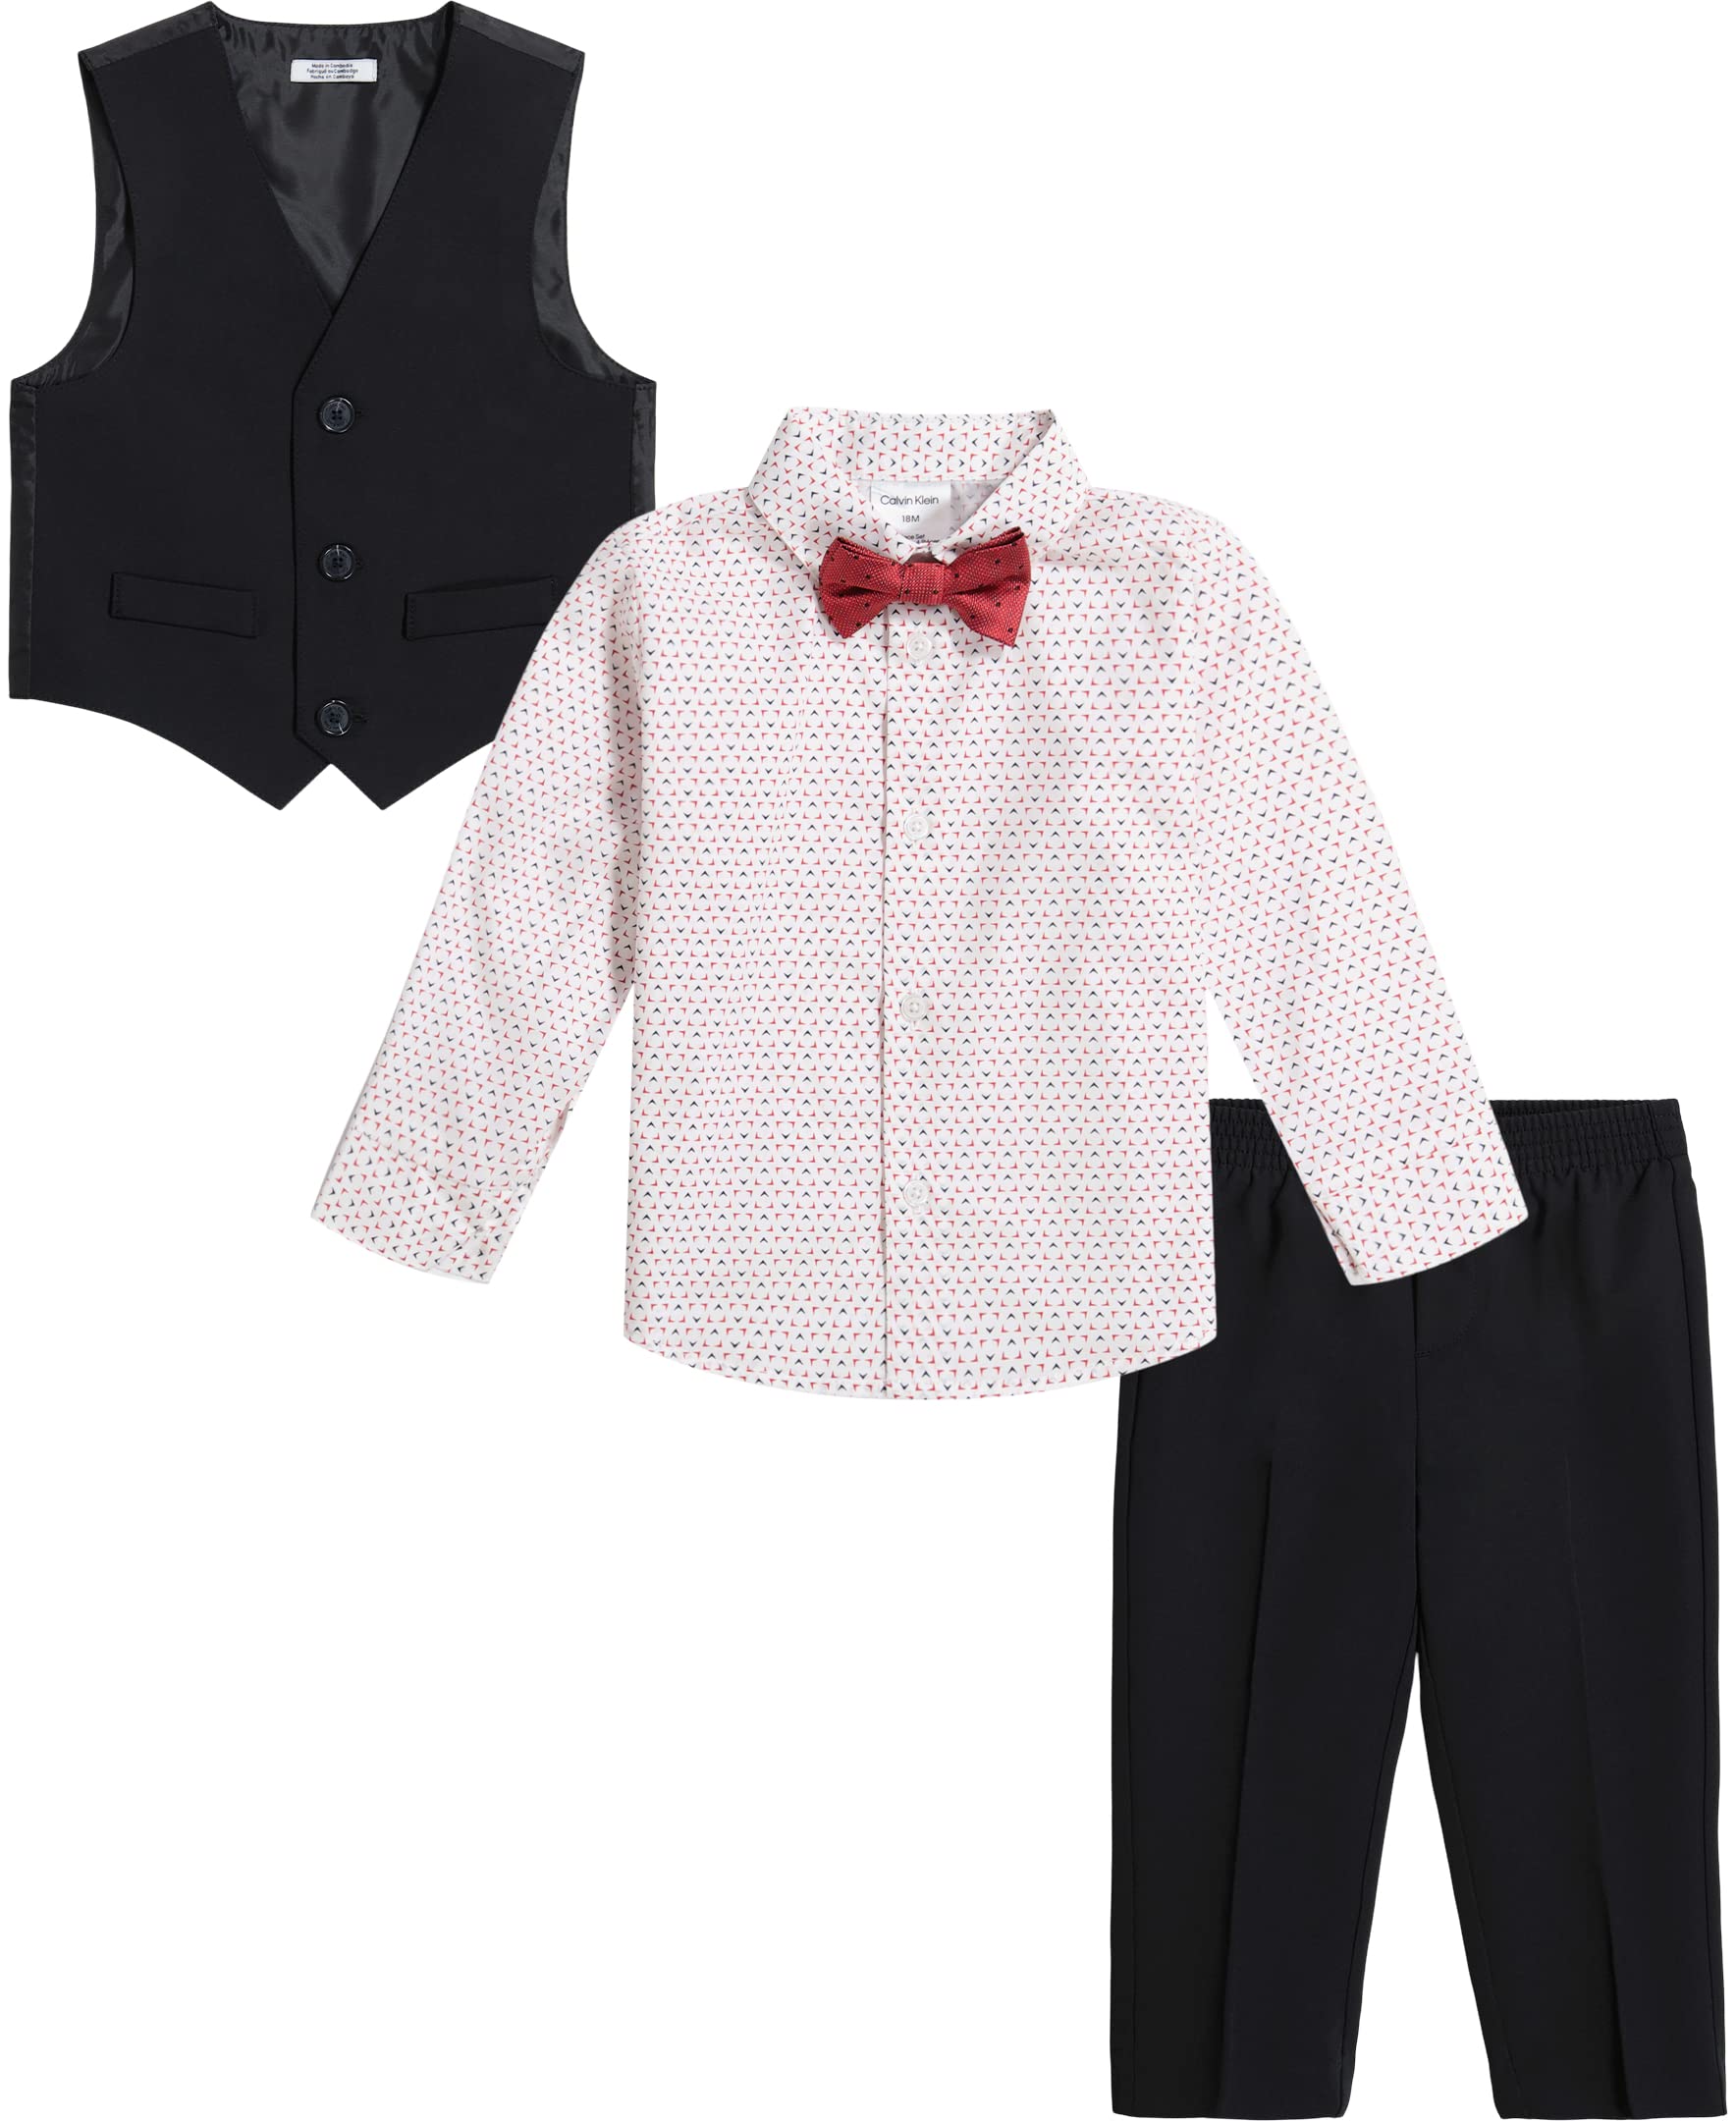 Calvin Klein Baby Boys' 4-Piece Formal Set, Includes Dress Shirt with Bow Tie, Suit Vest & Dress Pants